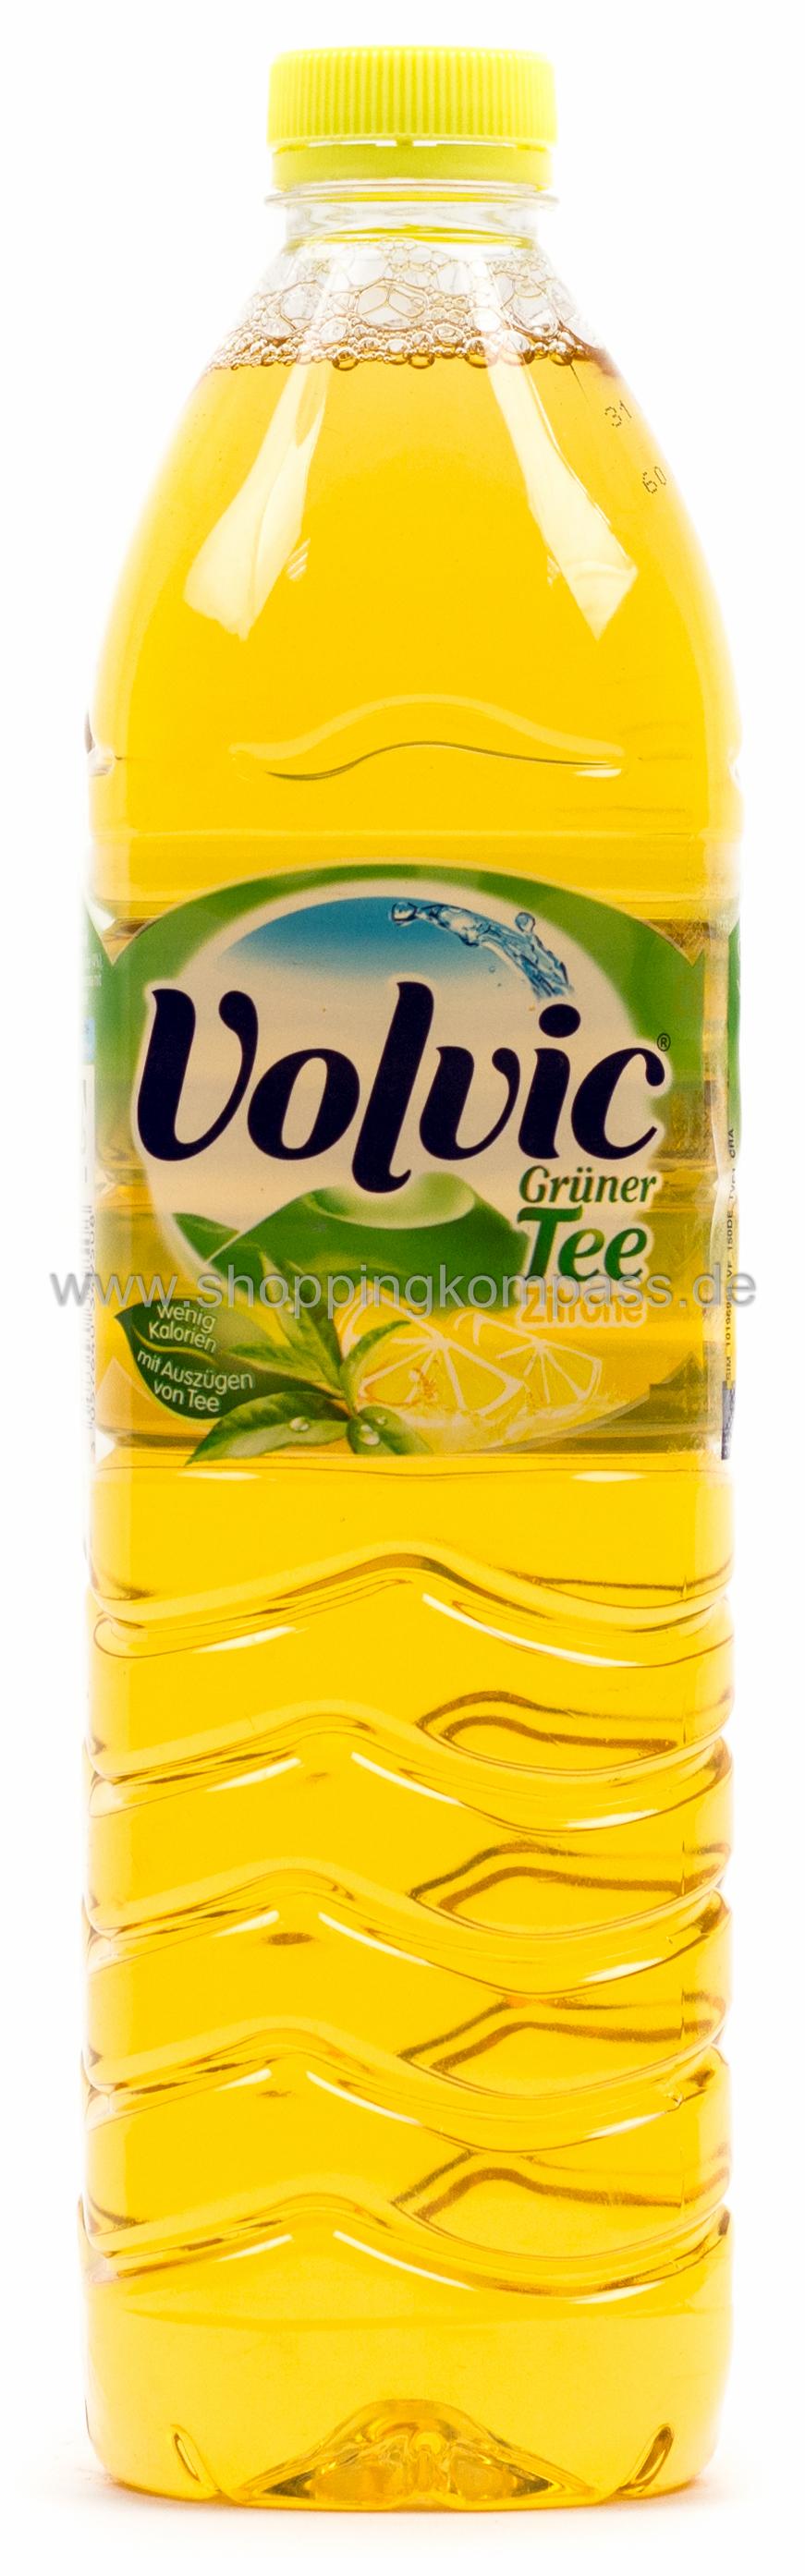 Volvic Grüner Tee Zitrone Kasten 6 x 1,5 l PET Einweg